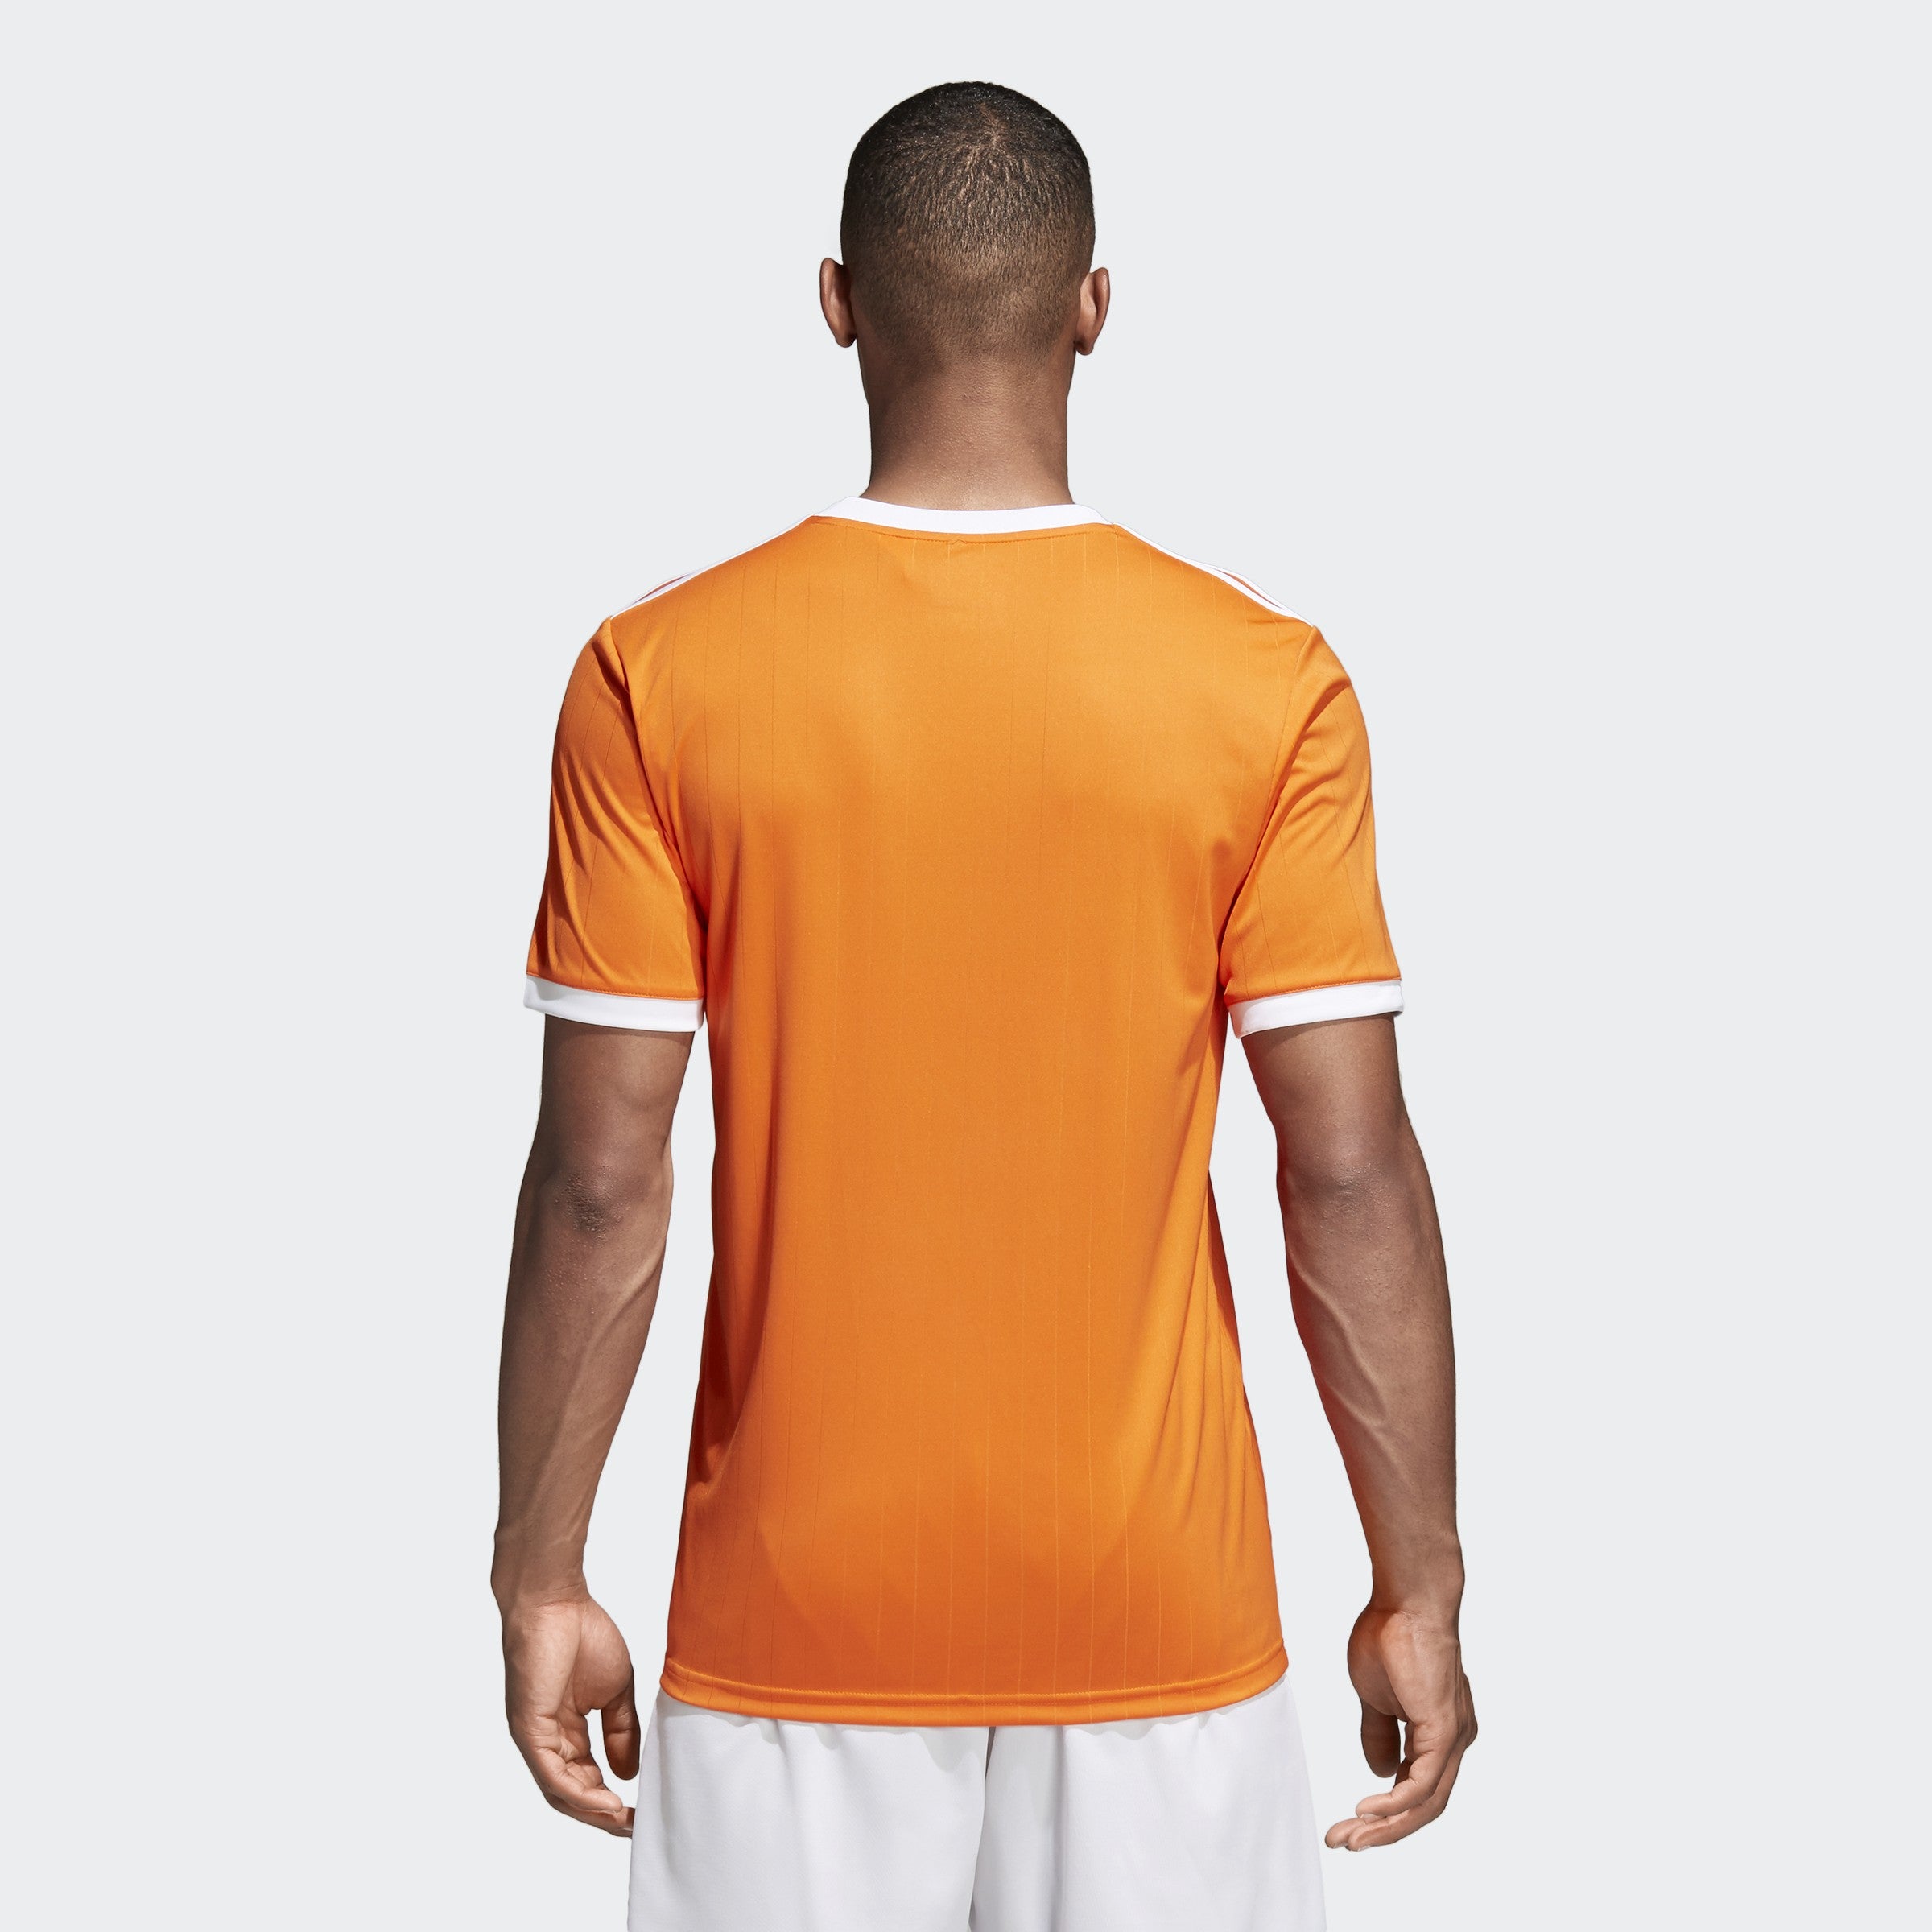 adidas Men's Jersey - Orange